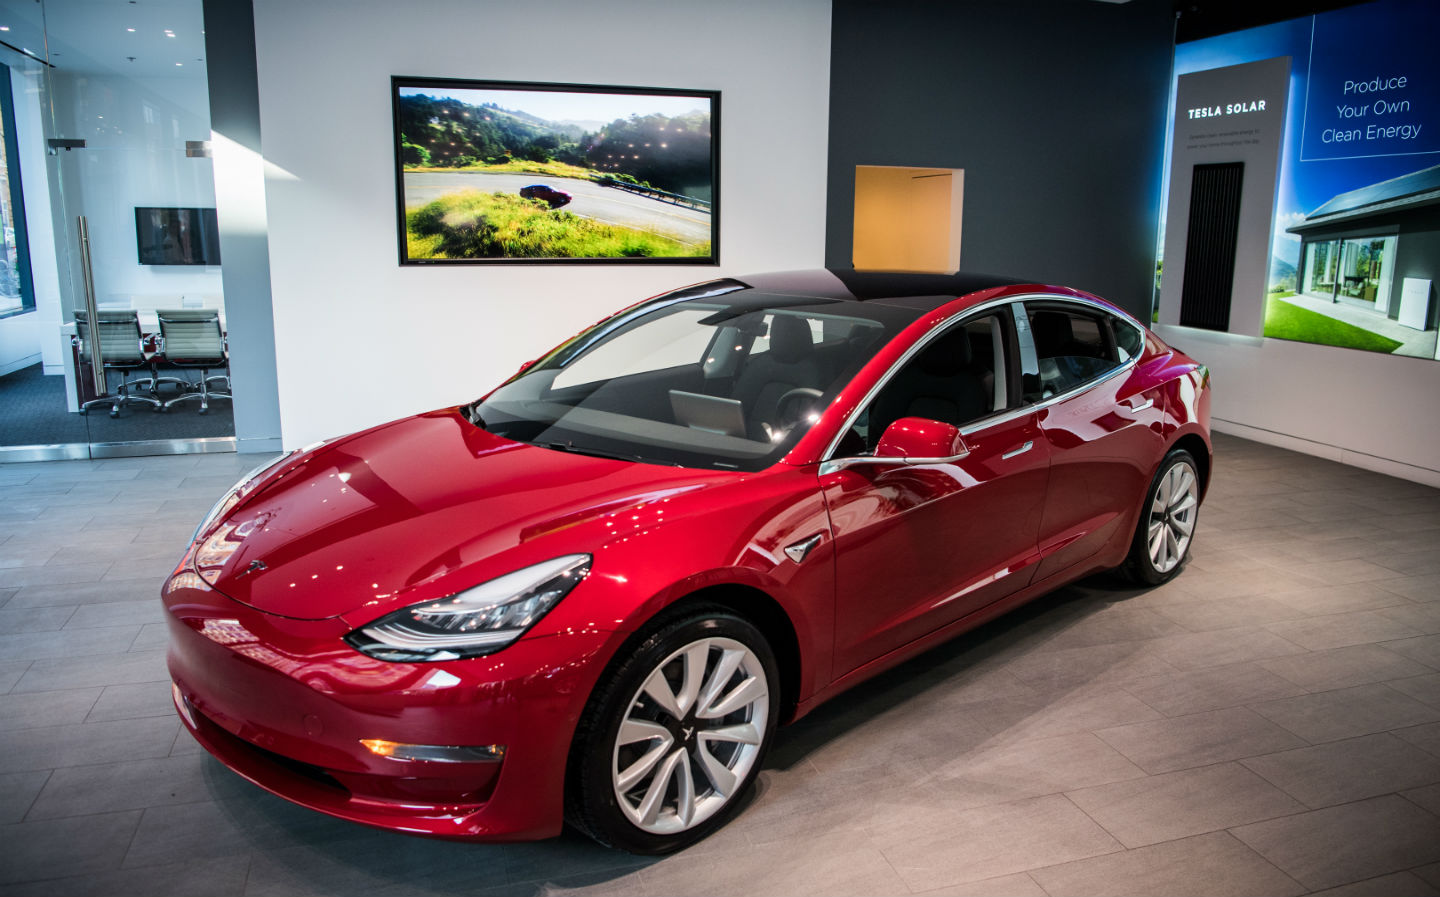 Tesla Model 3 to make UK debut at 2018 Goodwood Festival of Speed